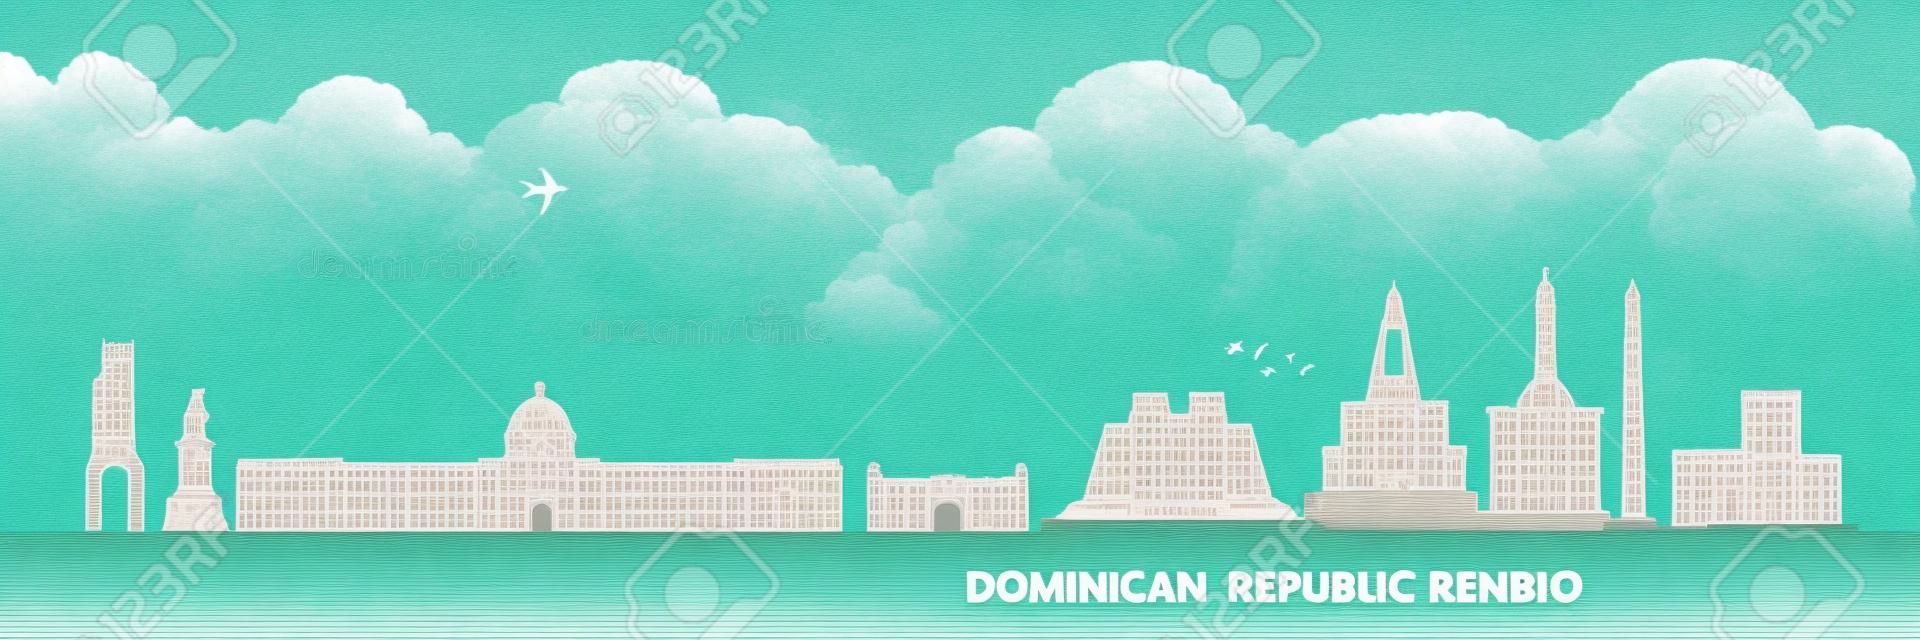 Dominican Republic  travel destination grand vector illustration.